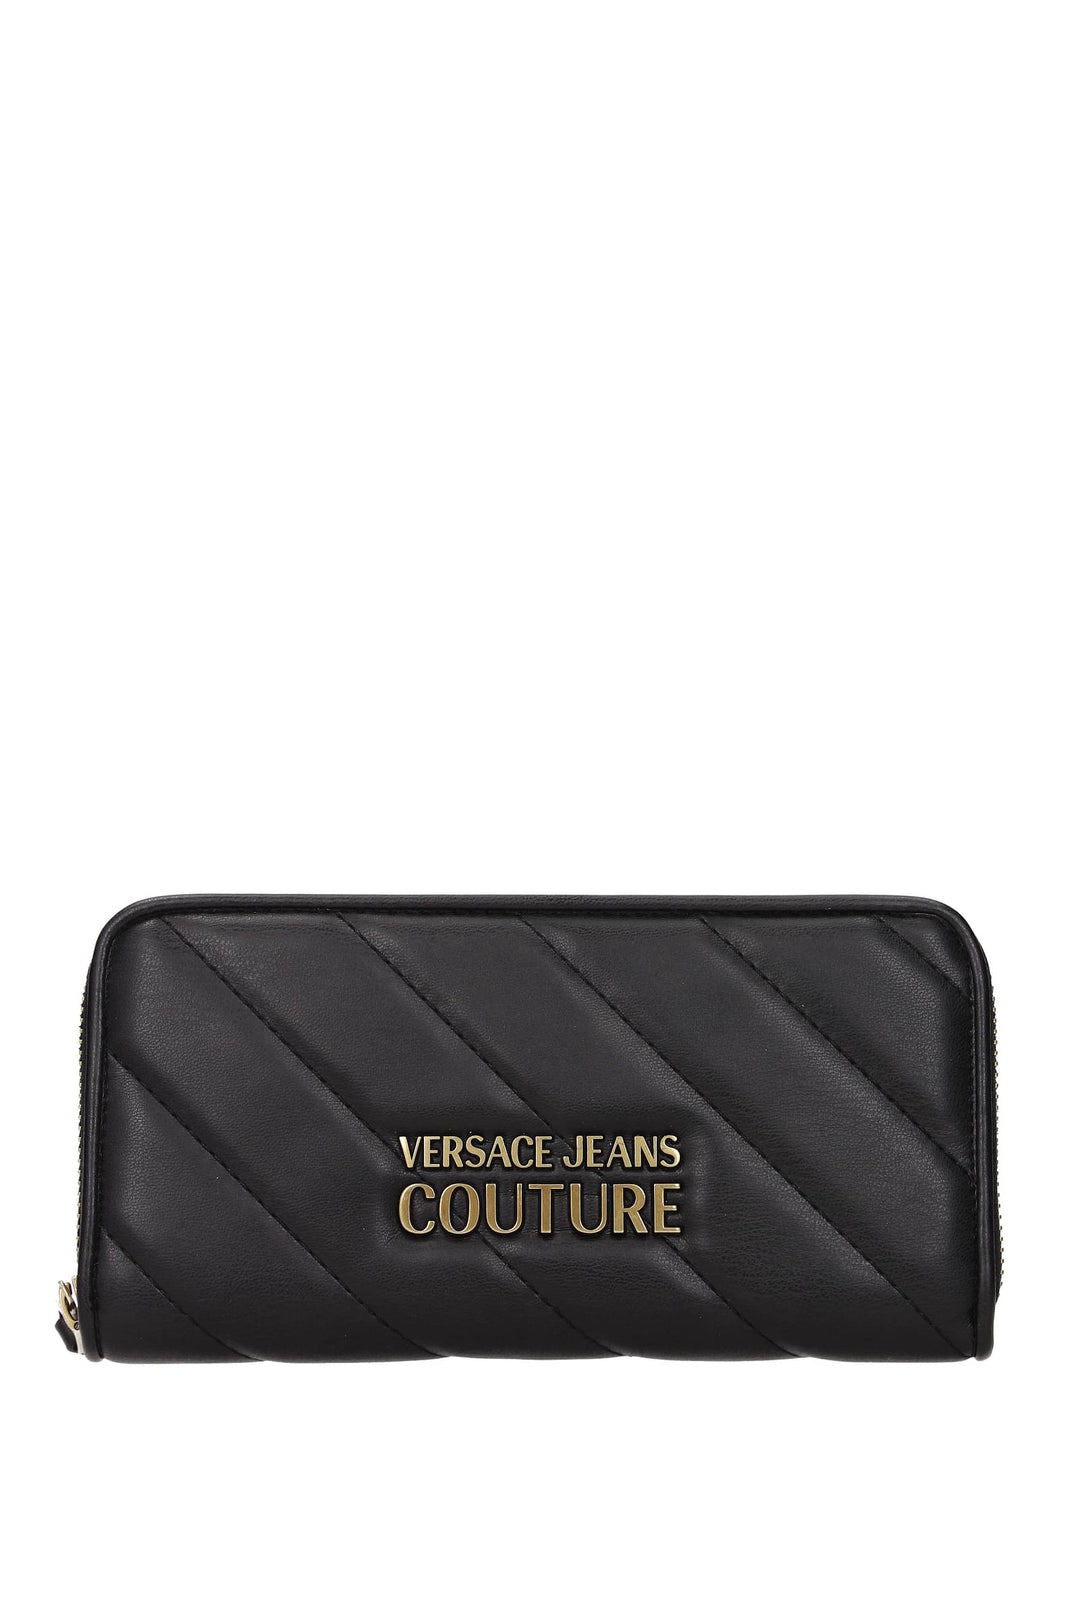 Portafogli Couture Poliuretano Nero - Versace Jeans - Donna